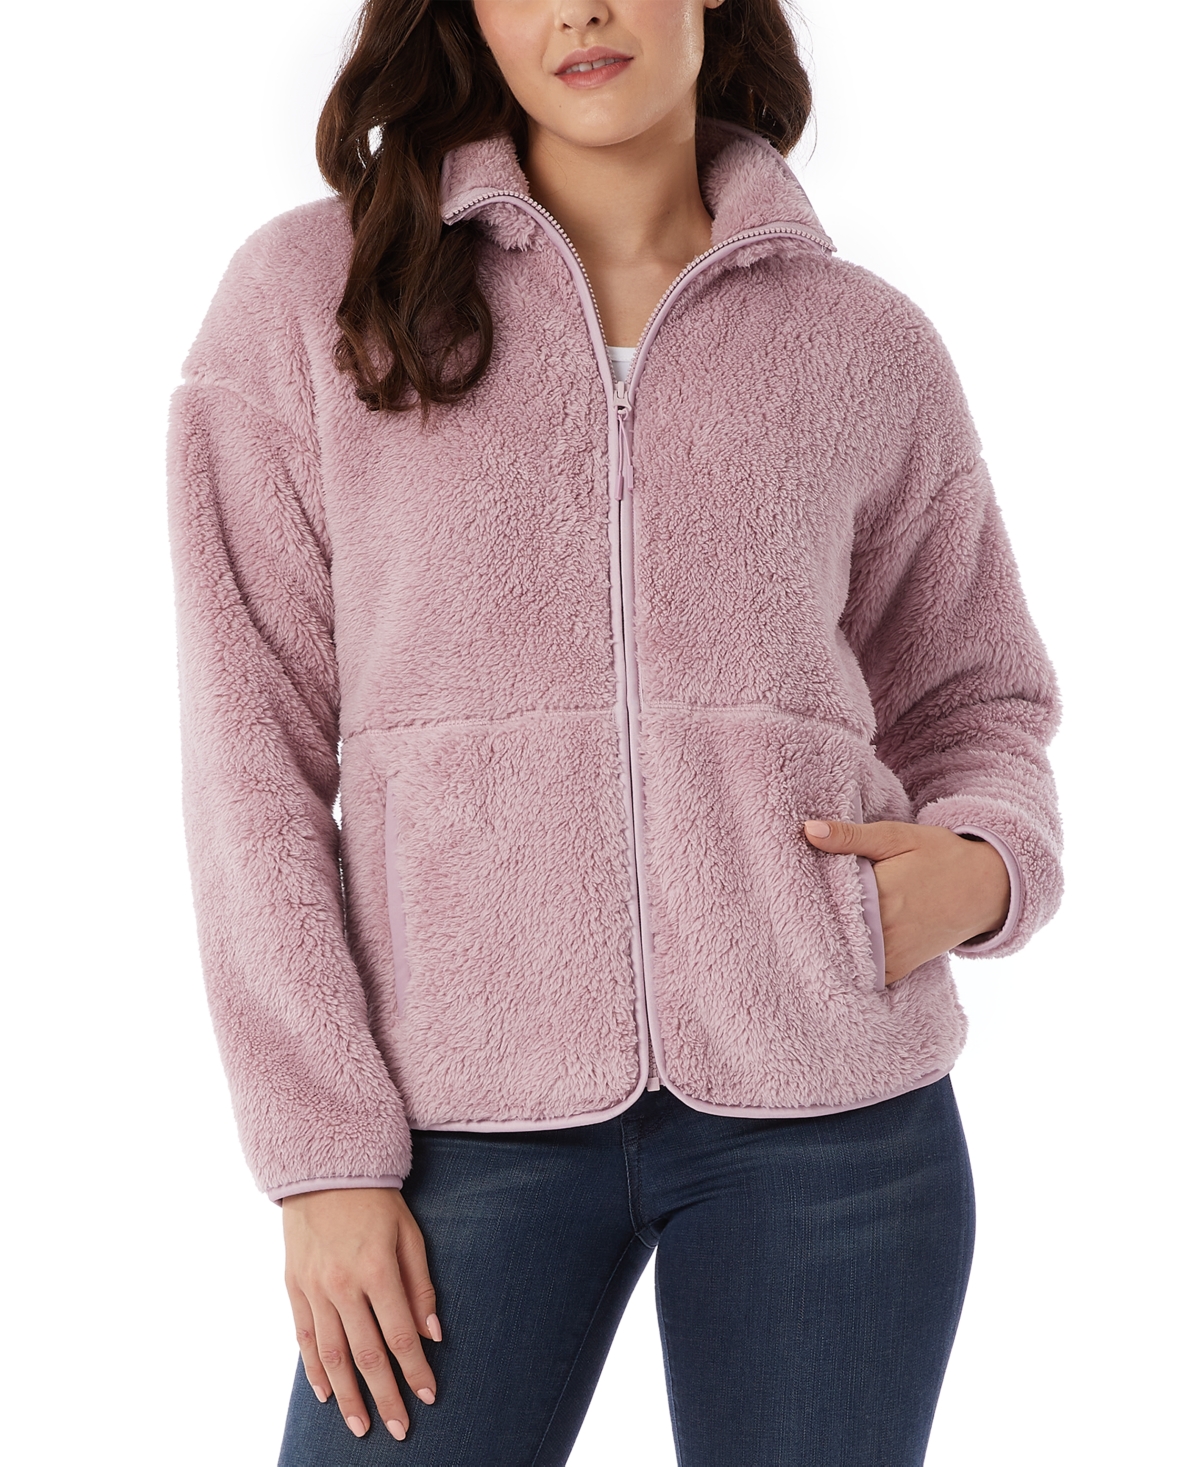 32 Degrees Women's Fleece Front-zipper Drop-shoulder Sweatshirt In Mauve Shadow